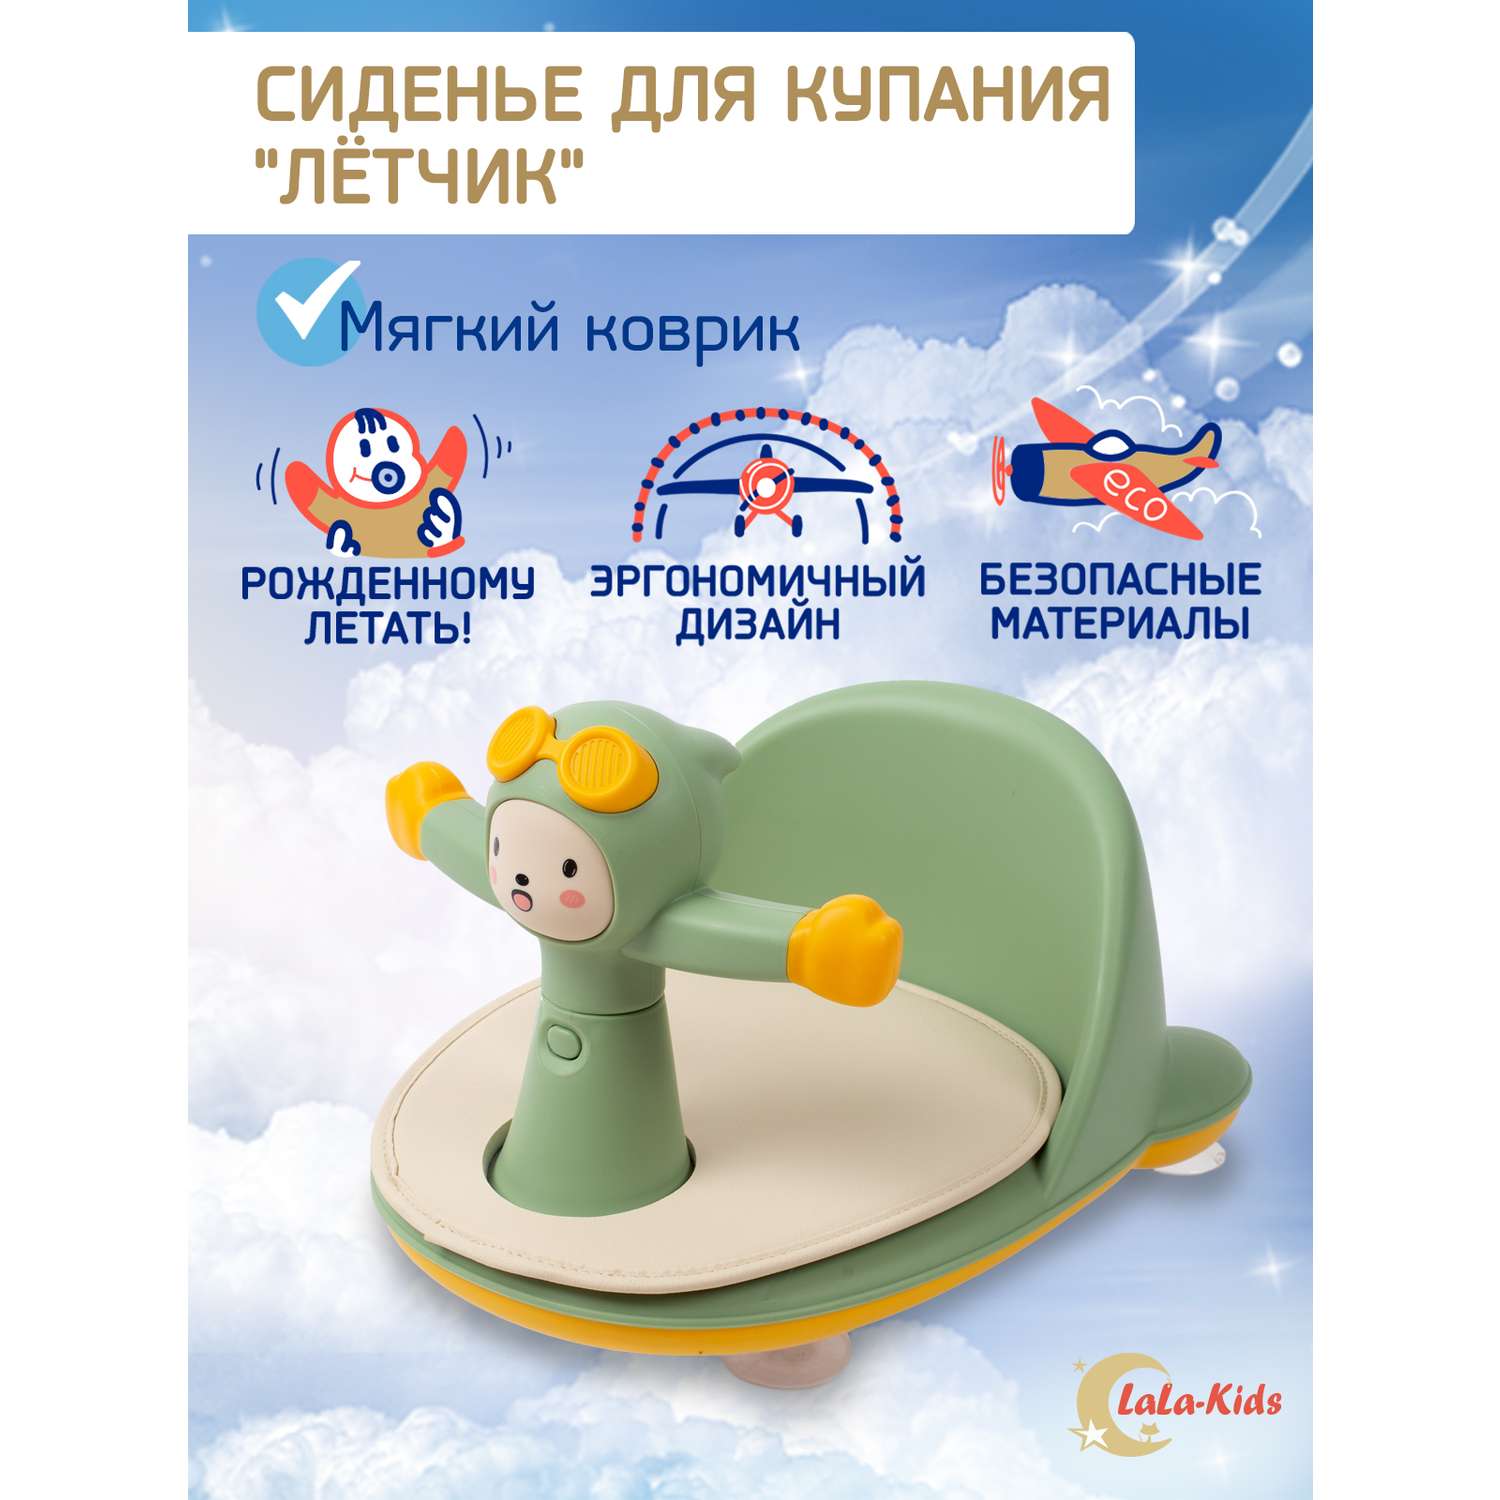 Сиденье LaLa-Kids для купания с мягким ковриком Летчик зеленое - фото 2